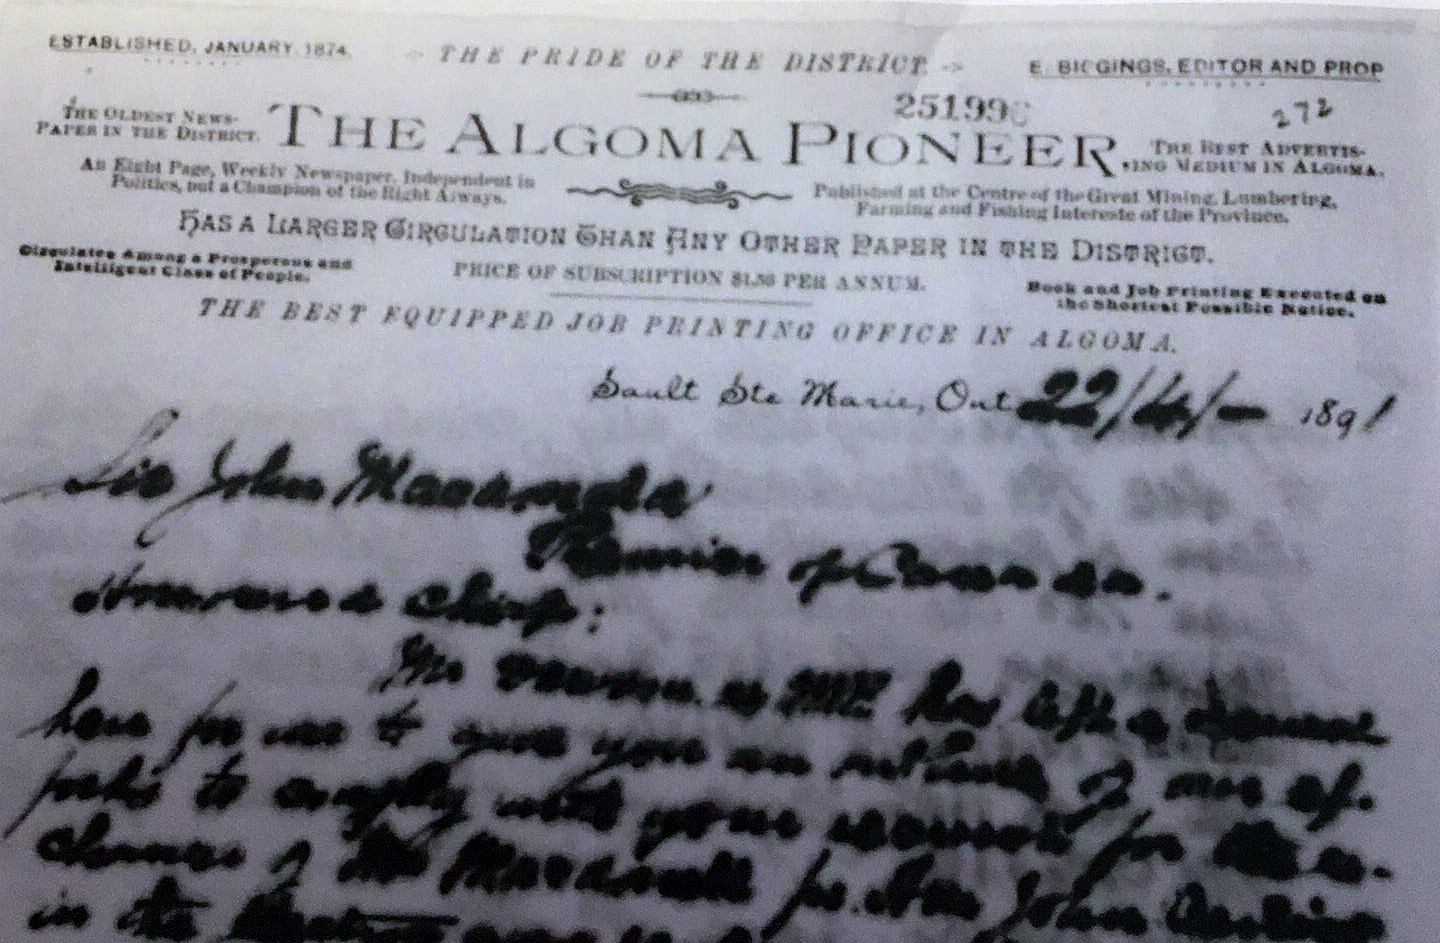 Algoma Pioneer Letterhead